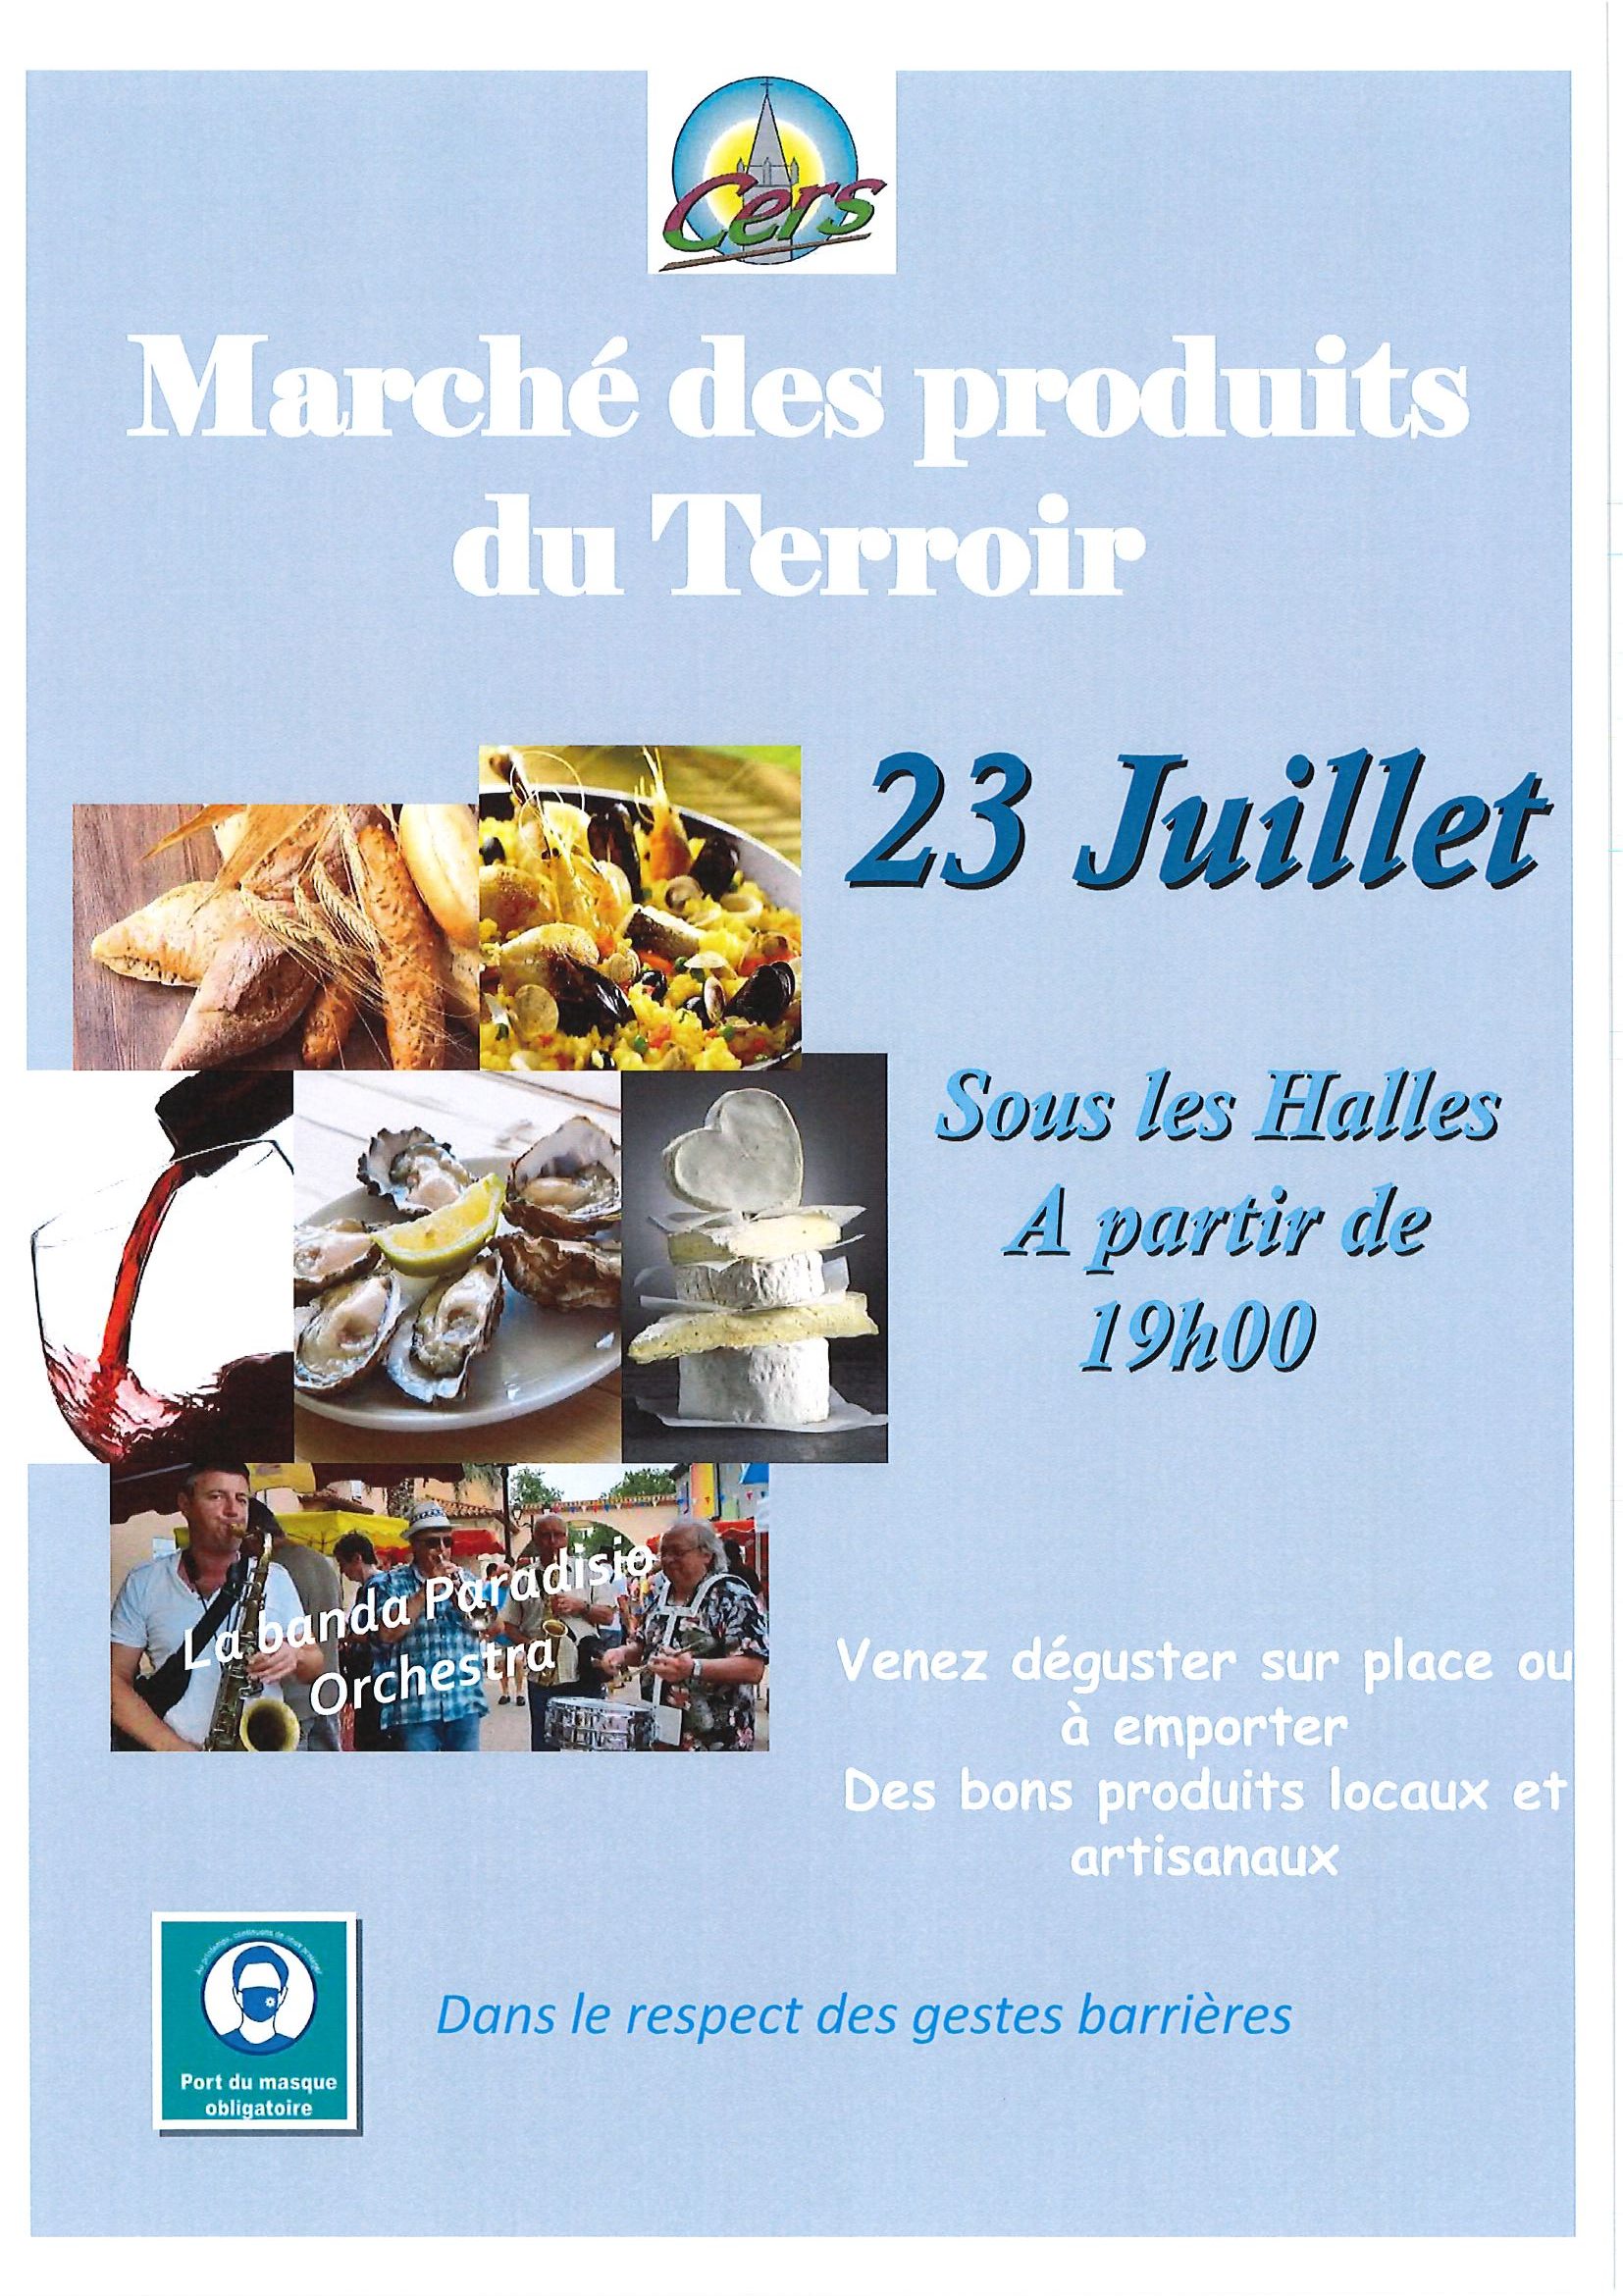 You are currently viewing 23 juillet : Marché des produits du Terroir